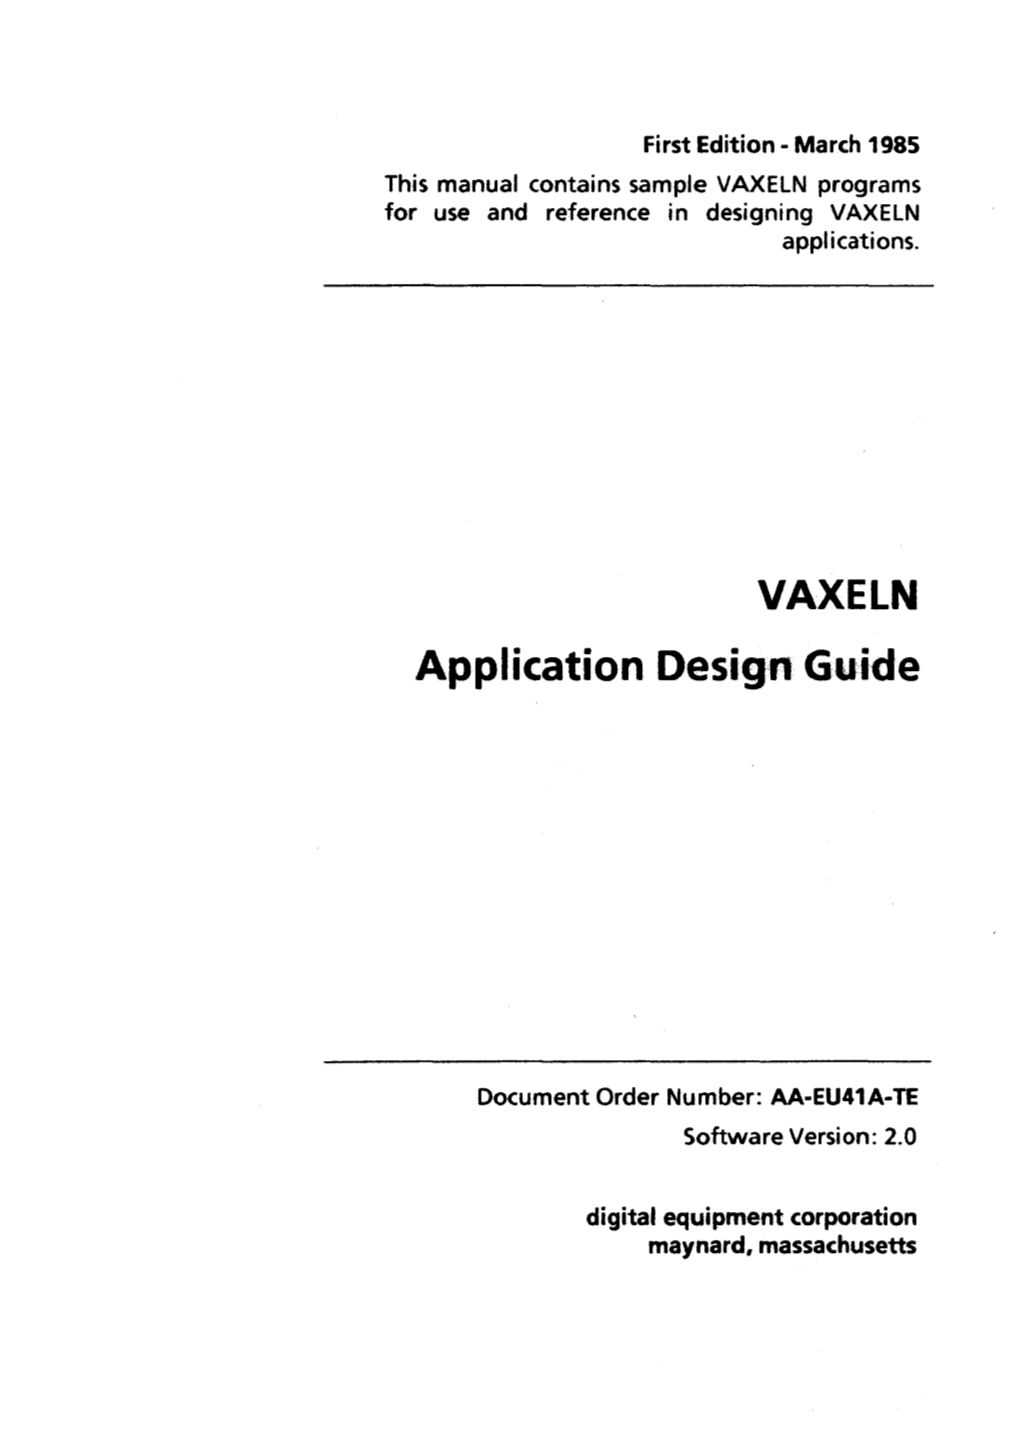 VAXELN Application Design Guide